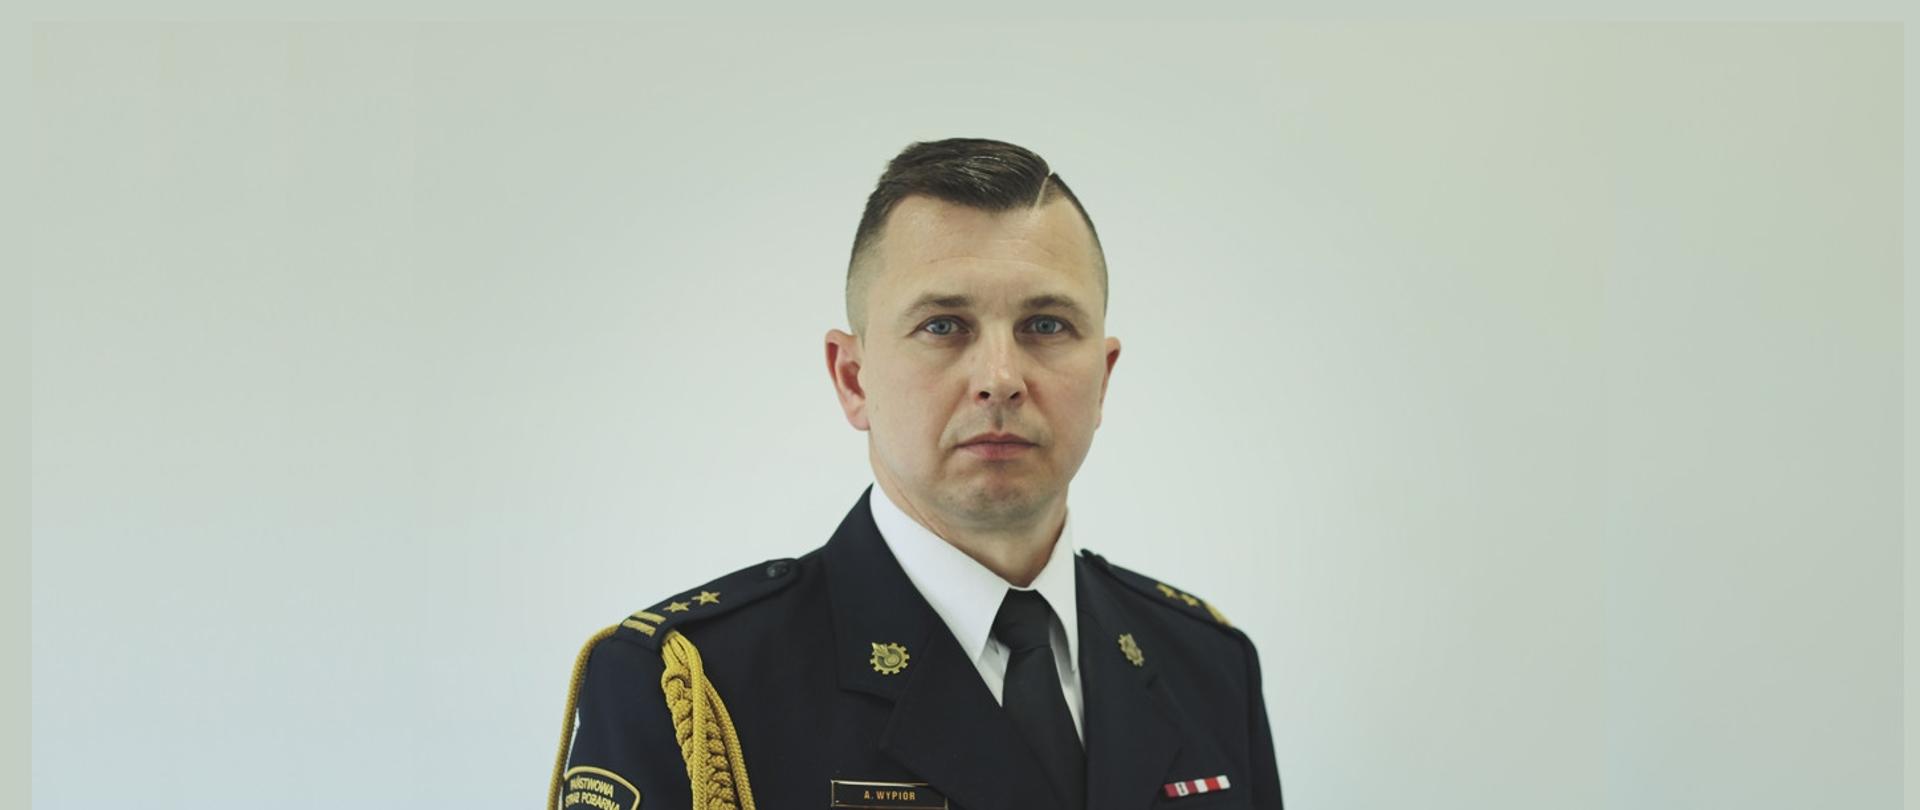 Zdjęcie przedstawia zastępcę komendanta powiatowego PSP w Kole bryg. Arkadiusza Wypióra